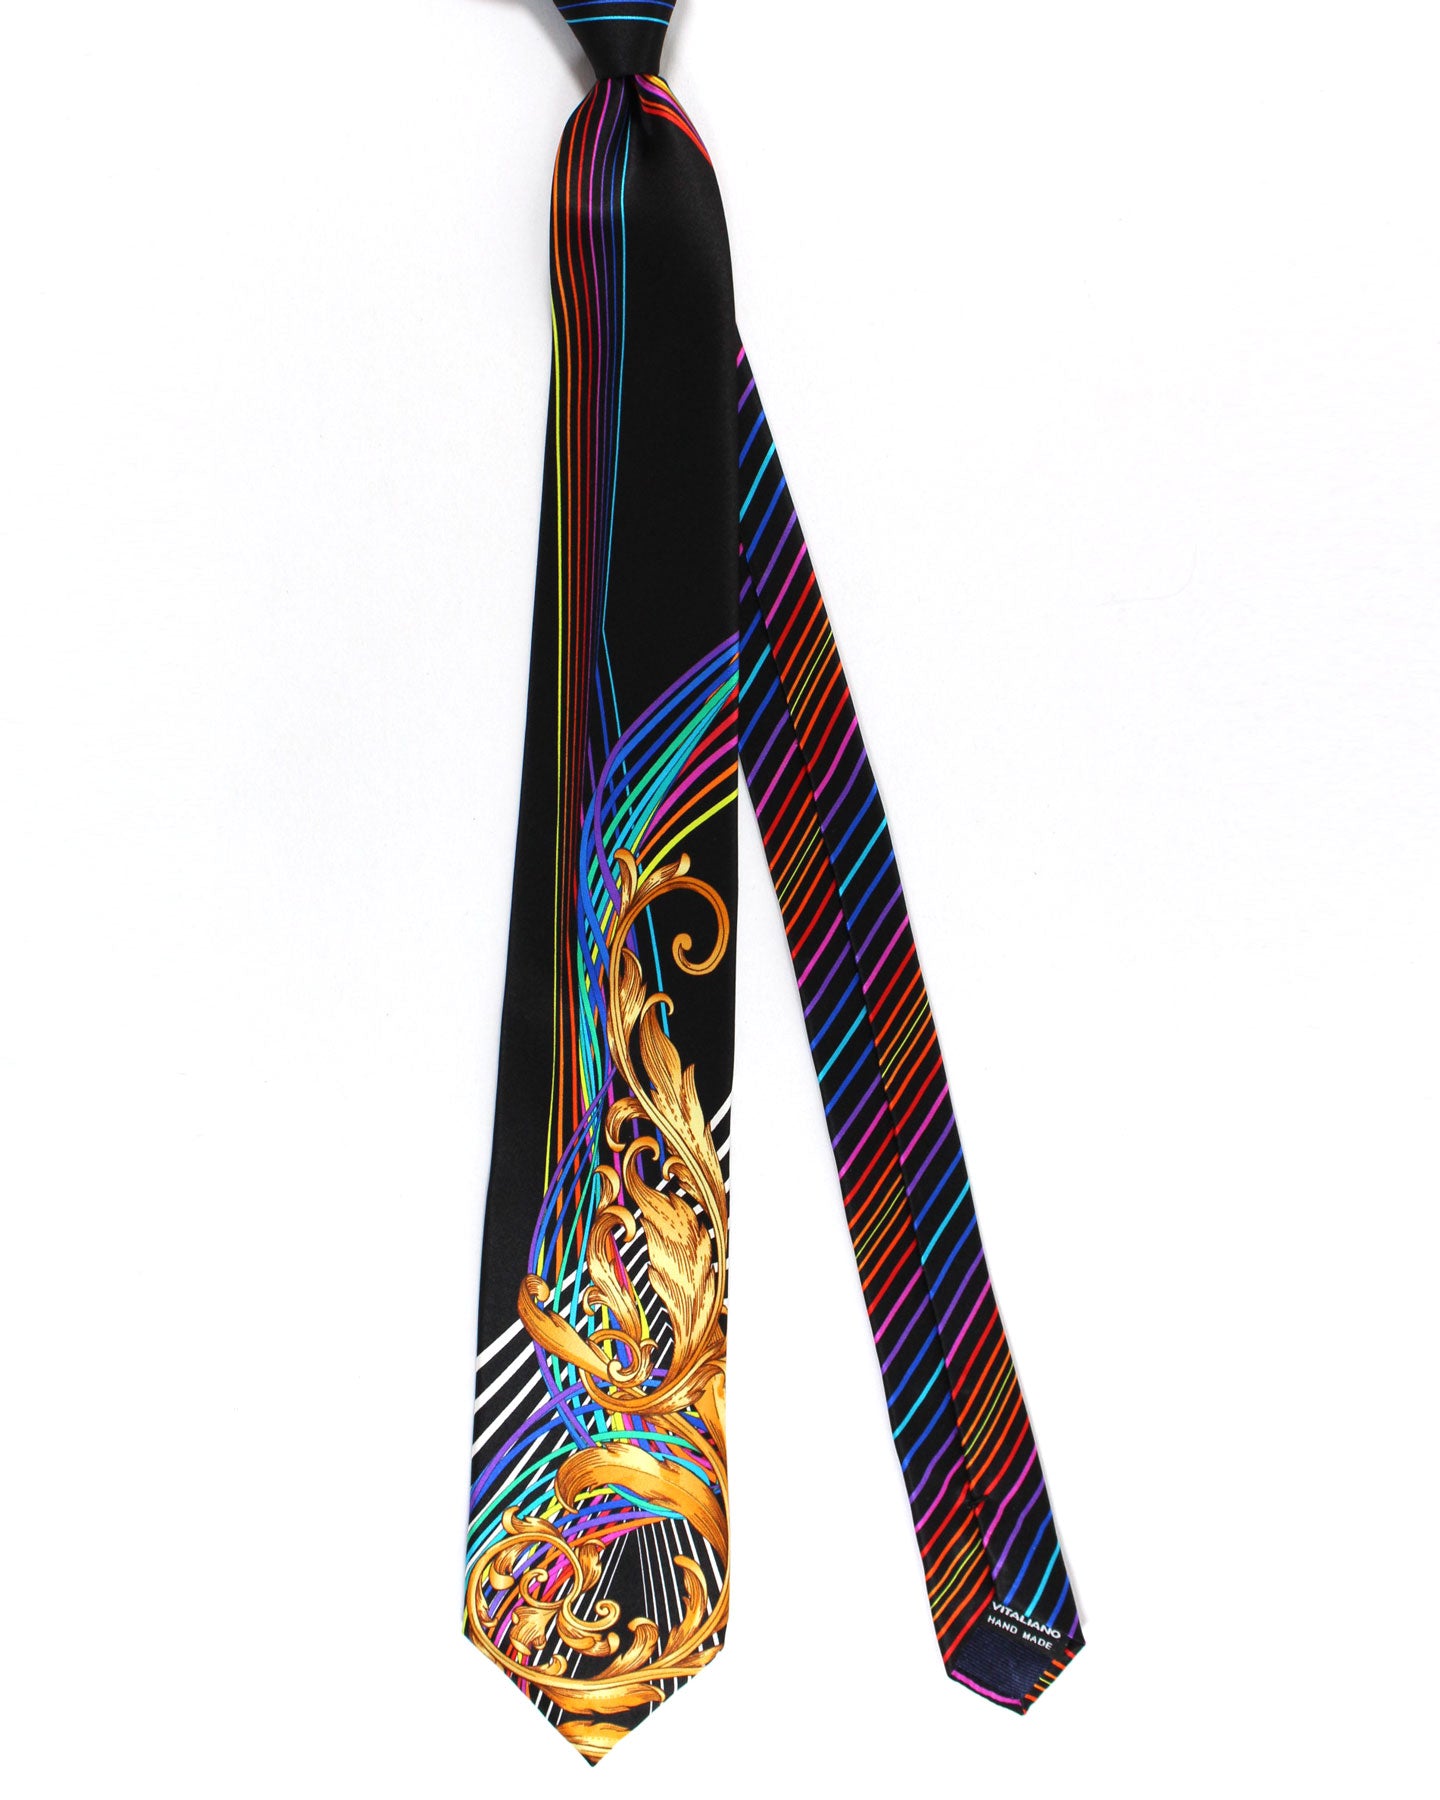 Vitaliano Pancaldi Silk Tie Black Brown Gold Multi Colored Swirl Ornamental Design